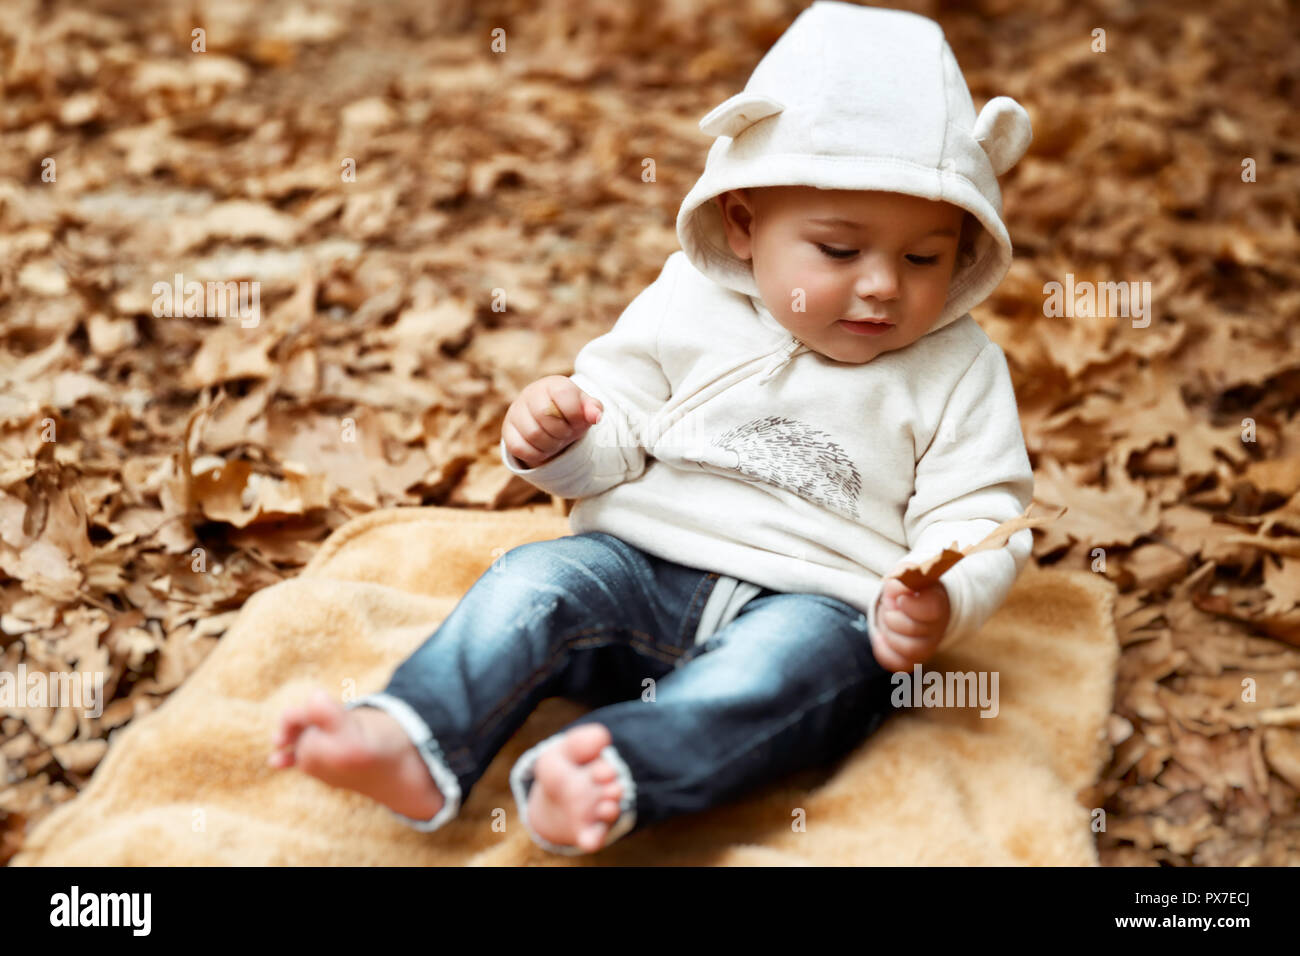 Cute fröhliches Kind Spaß im Herbst Park, süße, kleine Junge sitzt auf dem Boden mit trockenen Baum Blättern bedeckt, fröhliches Kind genießen Herbst Meere Stockfoto